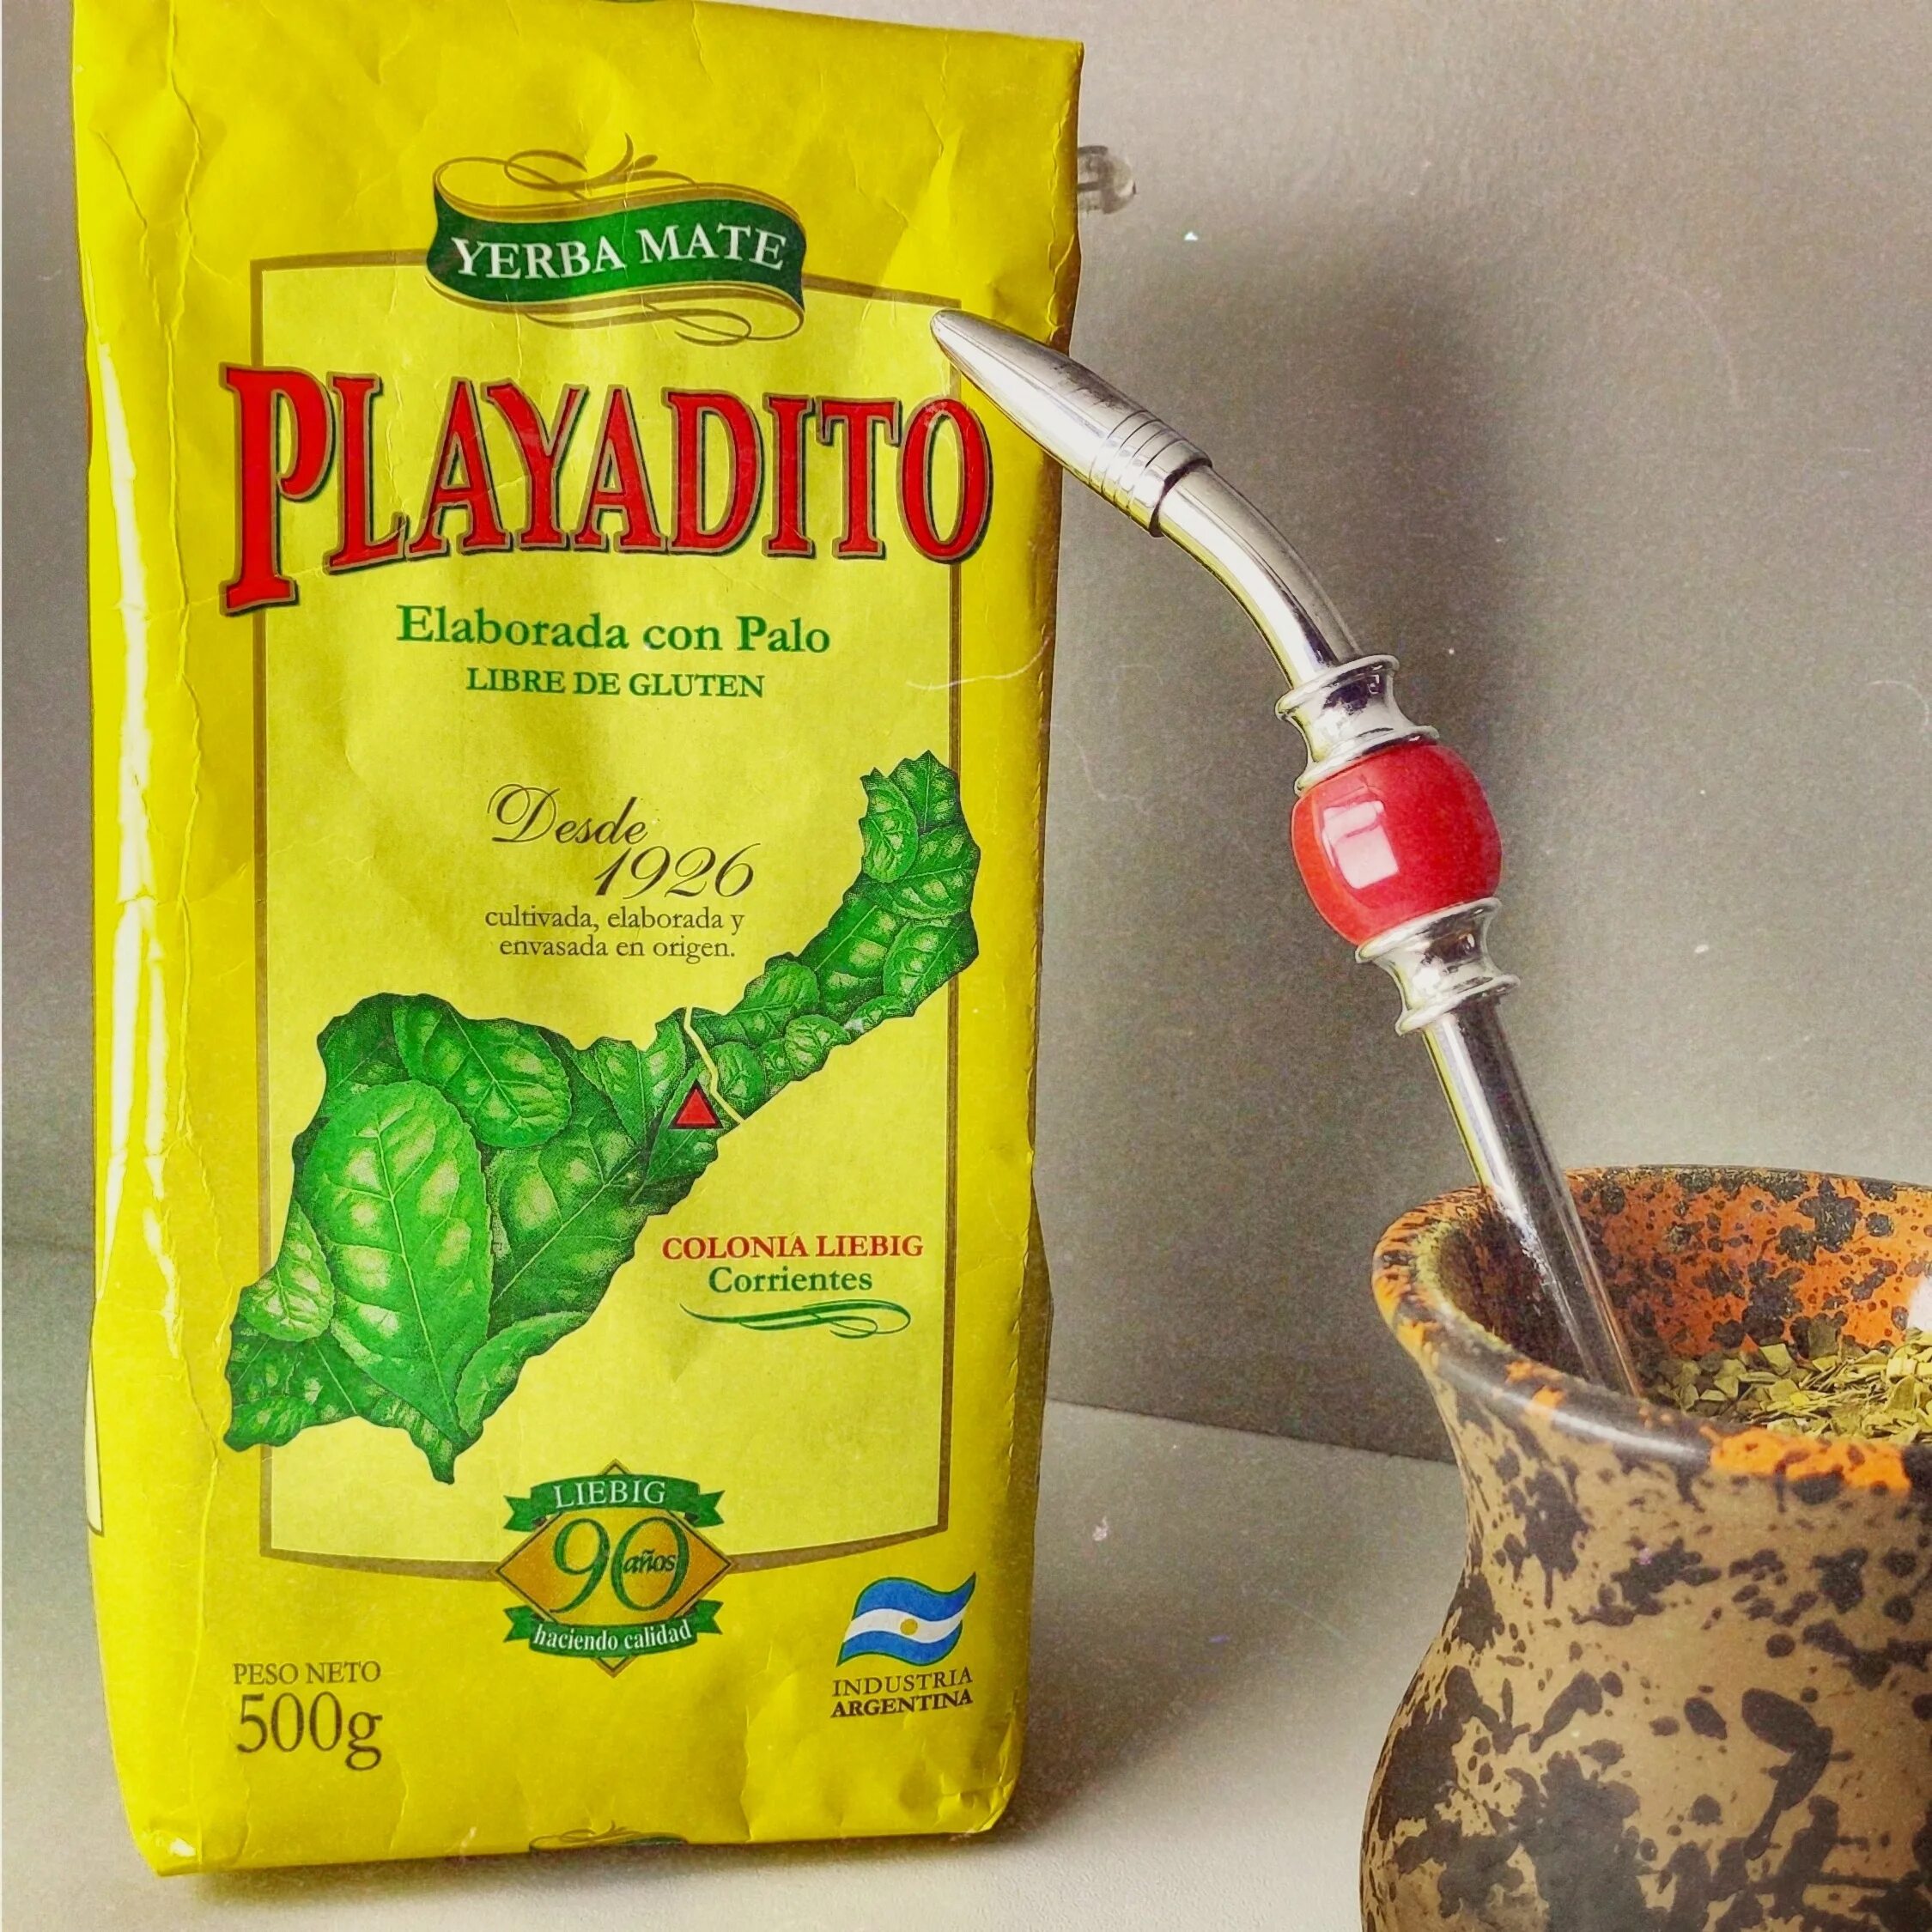 Мат чай купить. Йерба мате Playadito. Playadito чай мате. Перуанский чай матэ. Чай латиноамериканский мате.